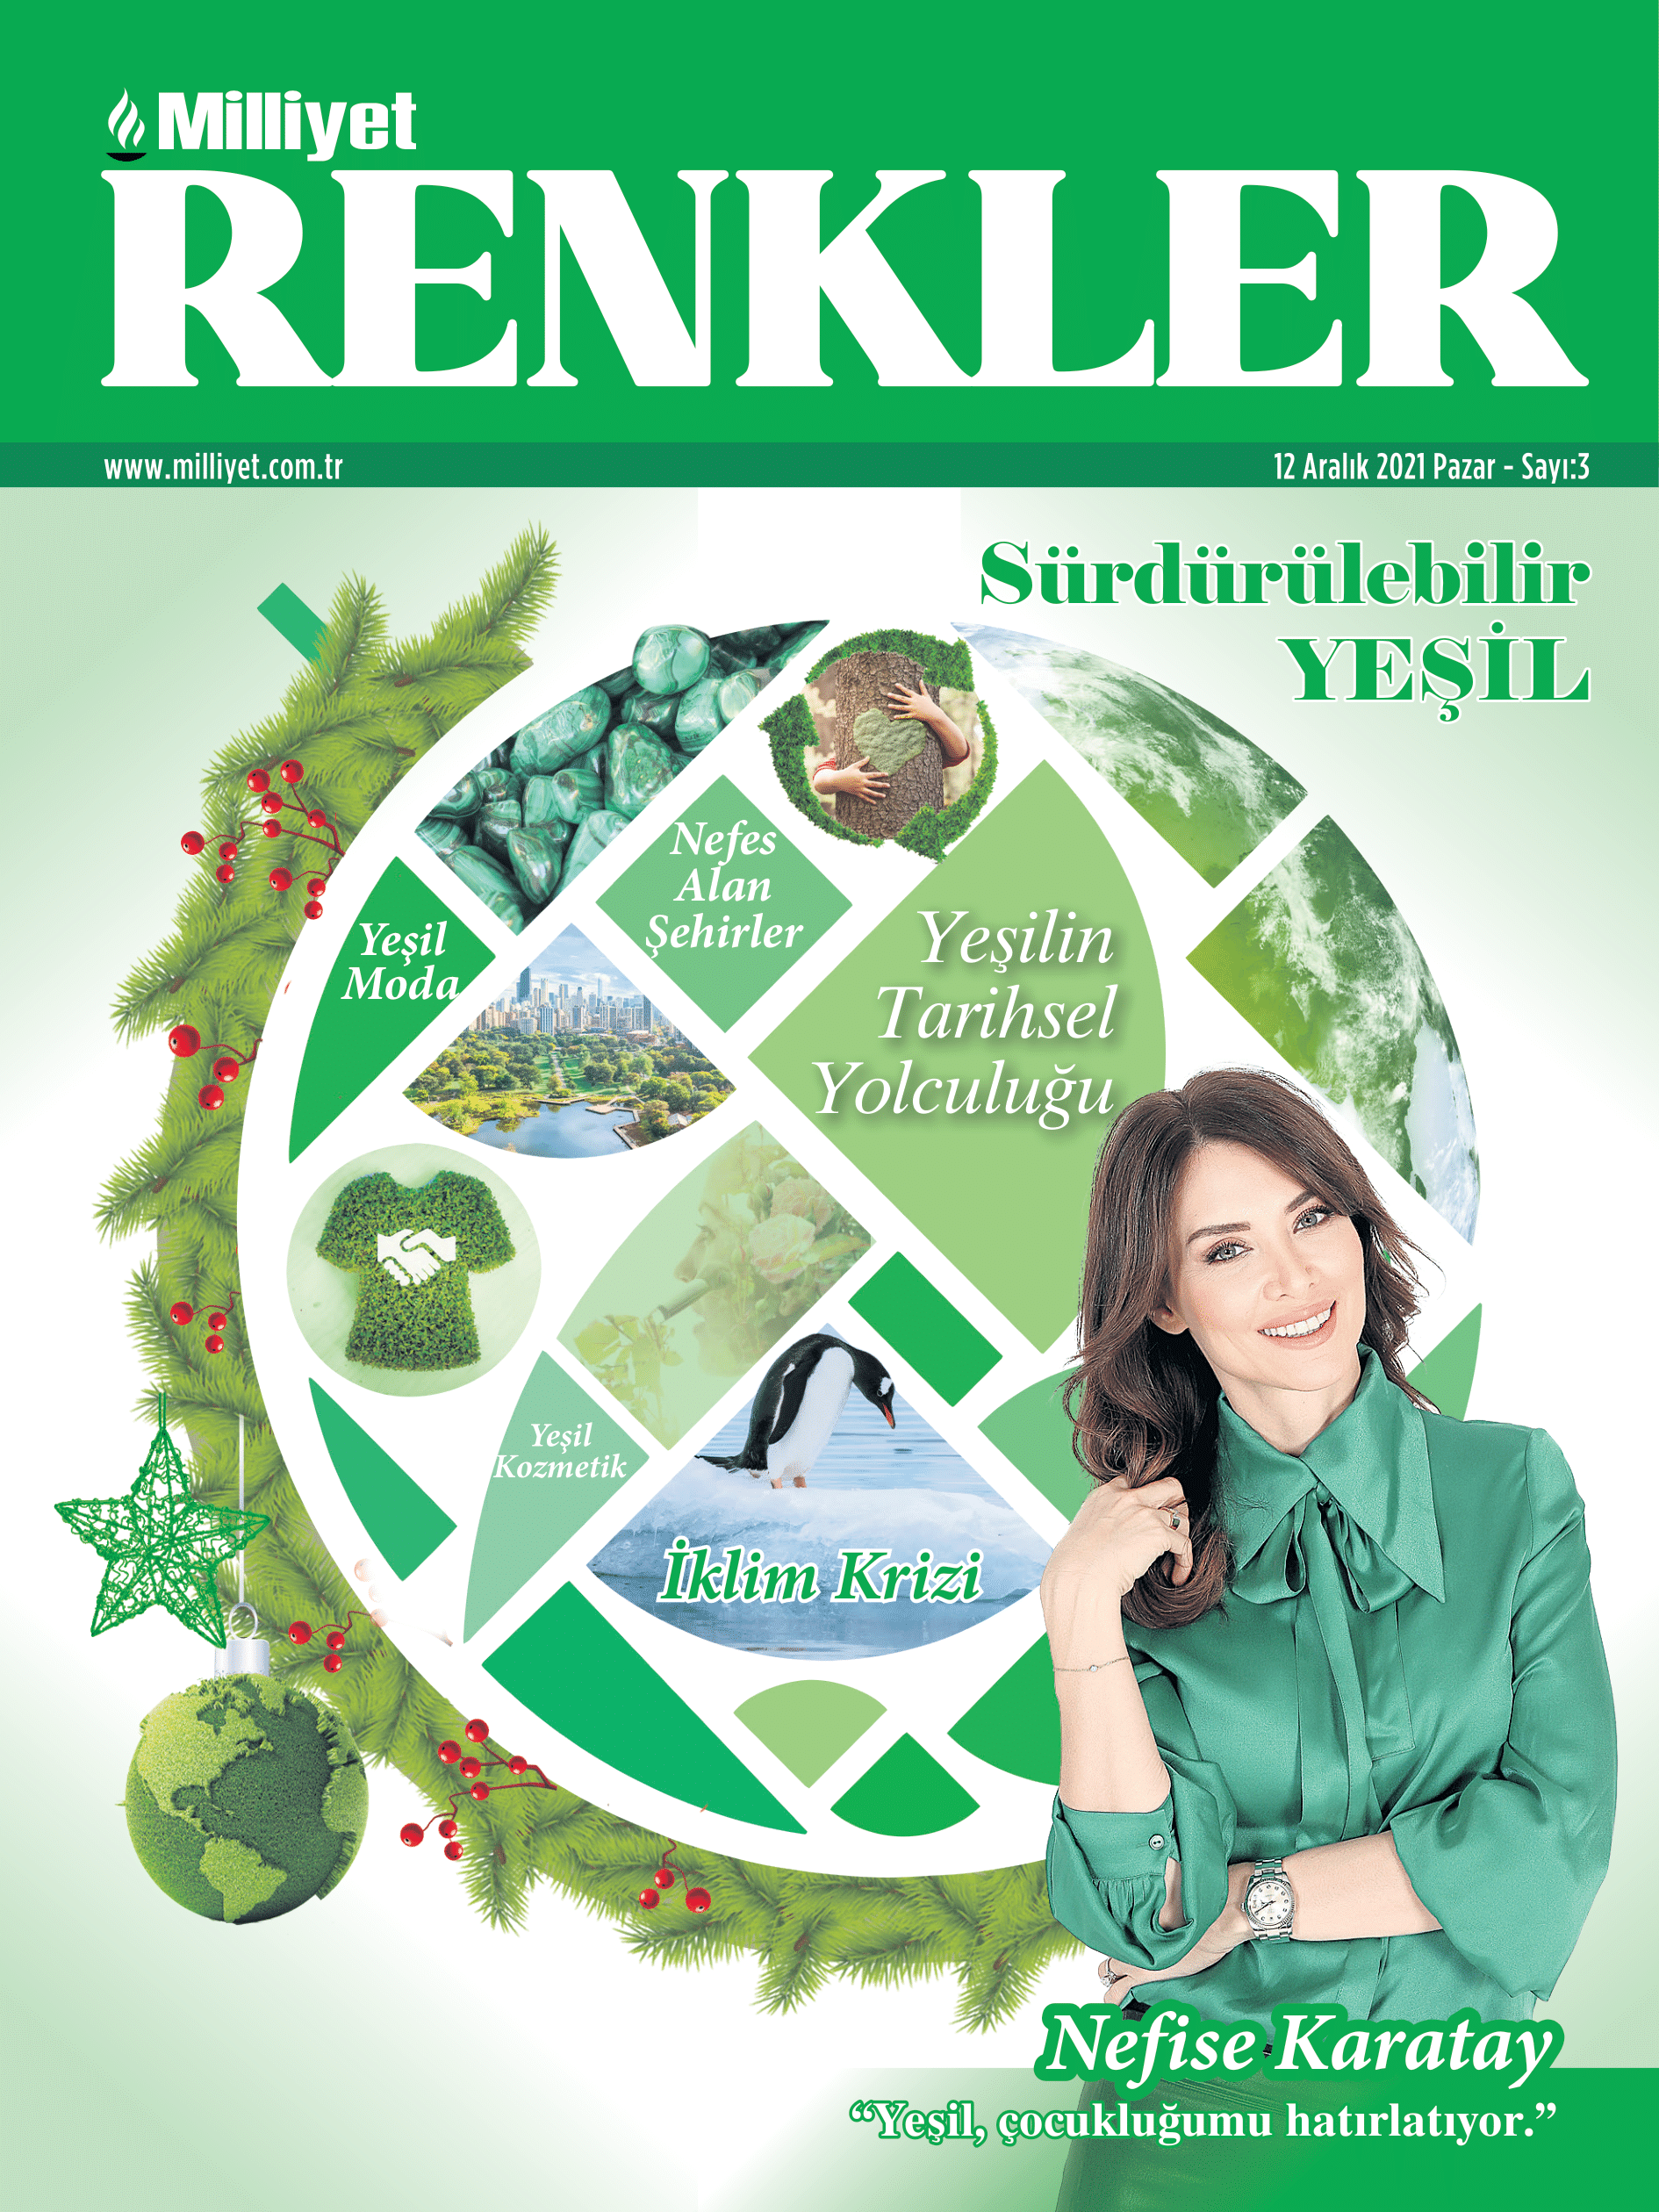 Milliyet Renkler Dergisi’nin Aralık ayı teması: Yeşil